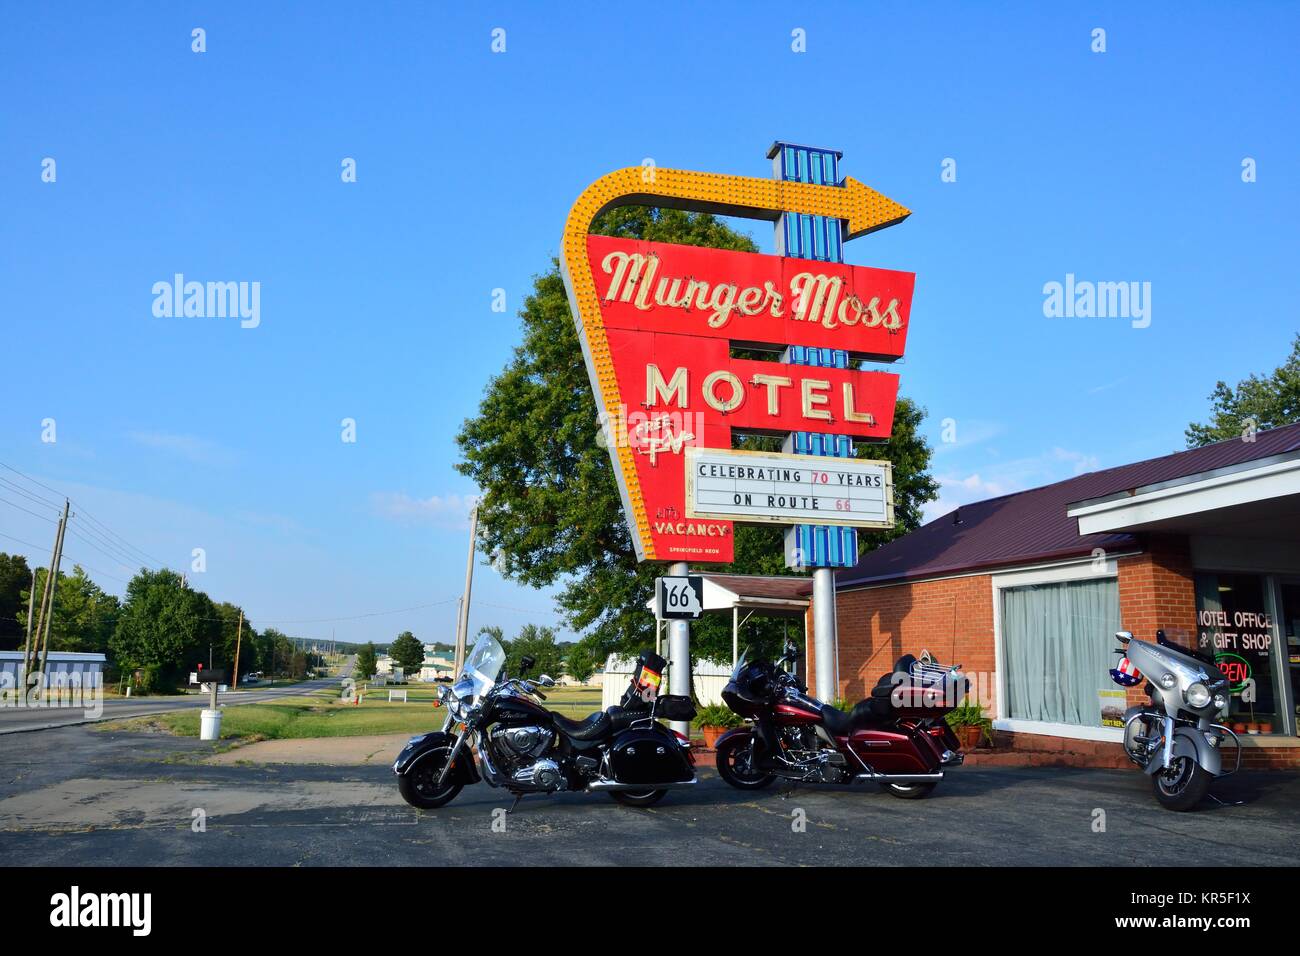 Liban, Missouri, USA - 18 juillet 2017 : Munger Moss Motel et vintage en néon sur l'historique Route 66 au Missouri. Banque D'Images